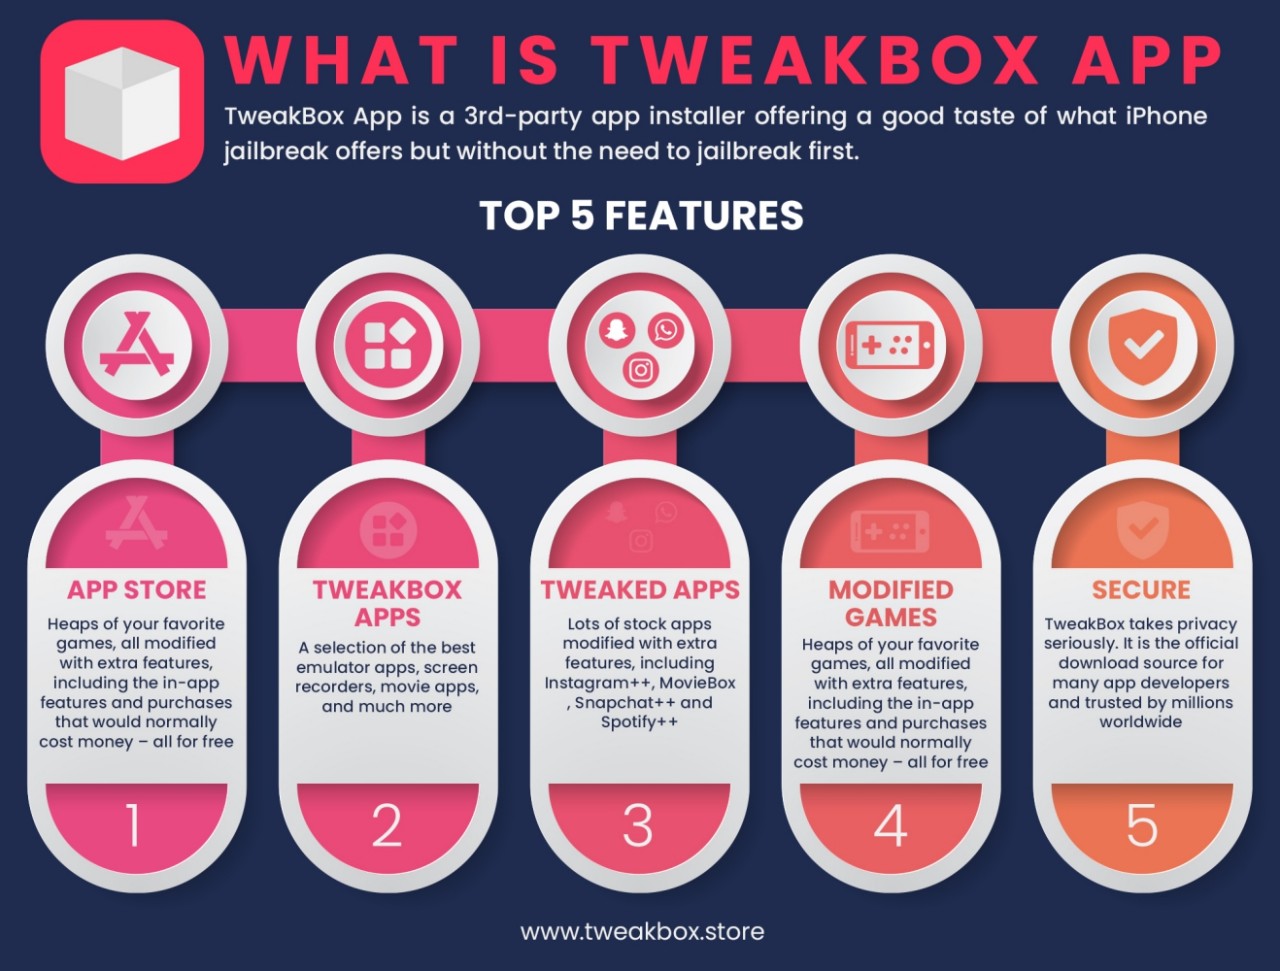 tweakbox features infographic